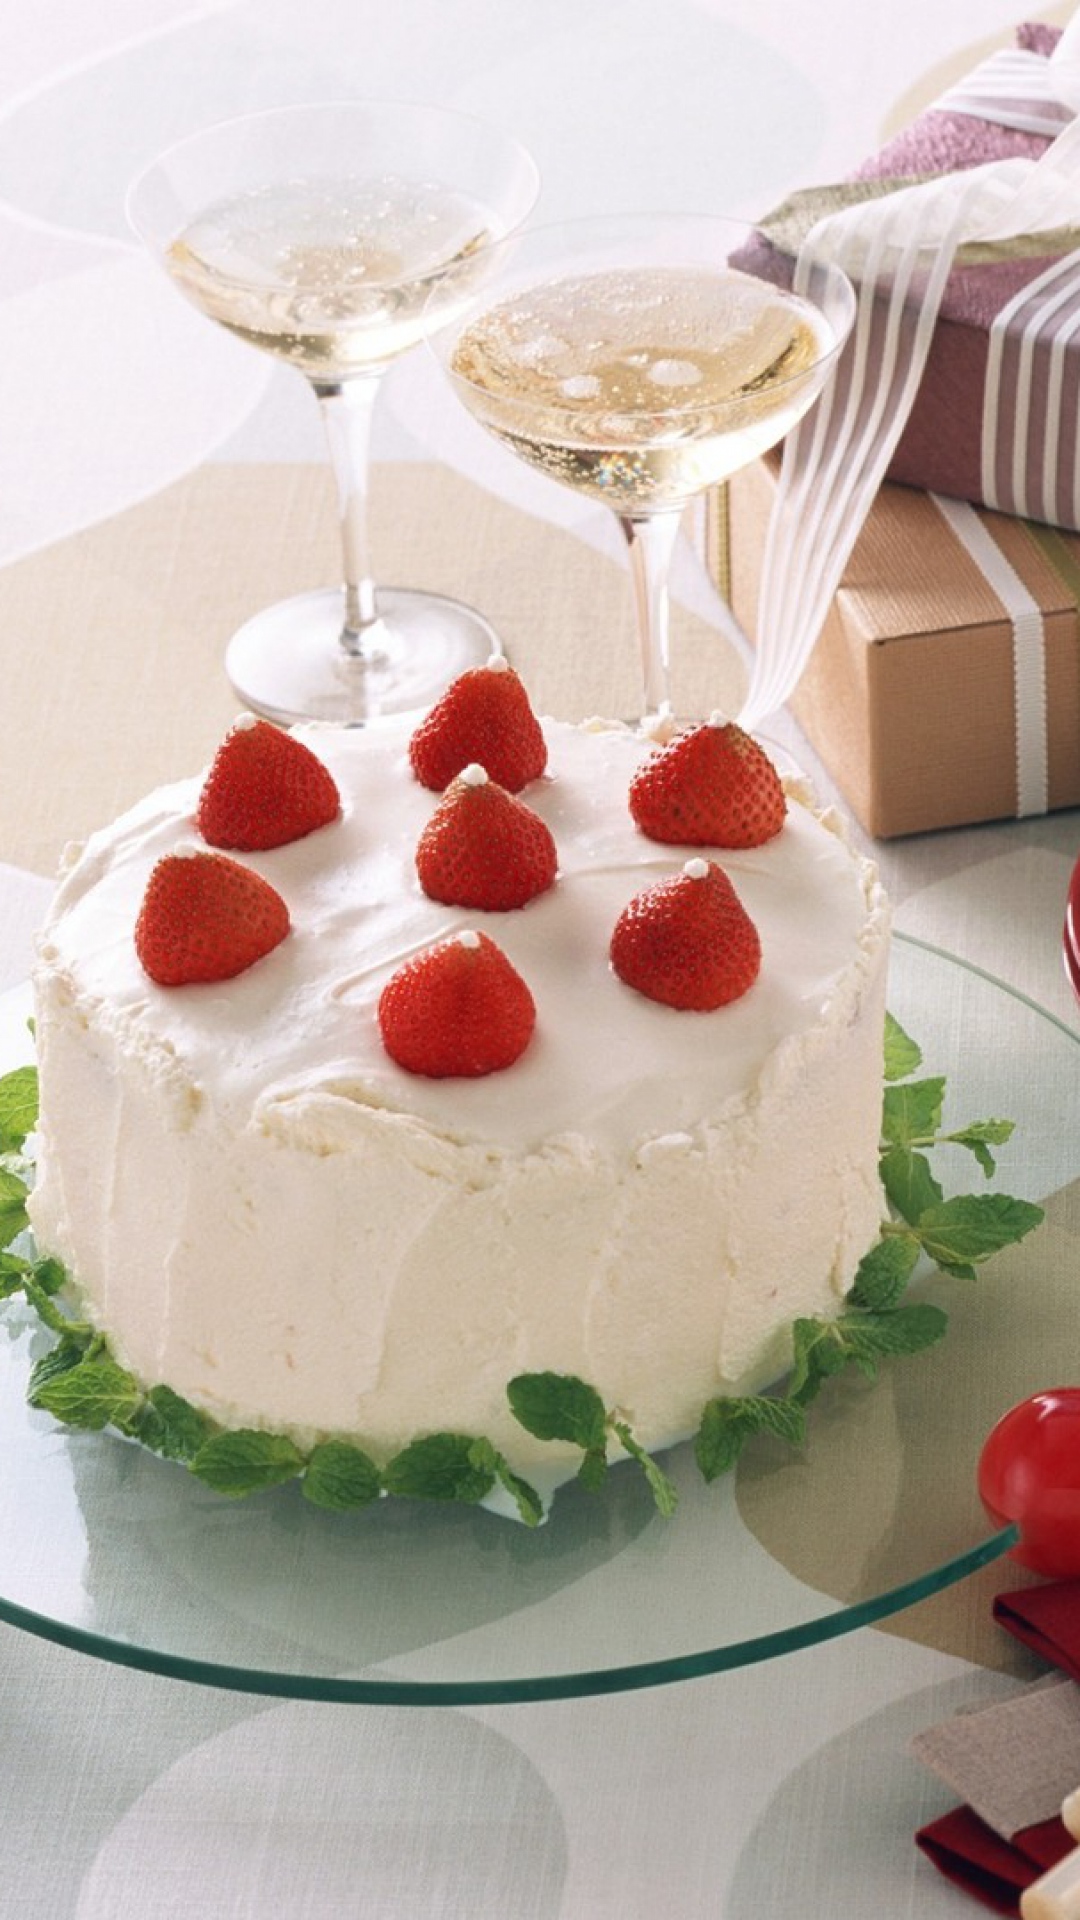 생일 케이크 벽지 무료 다운로드,음식,케이크,디저트,torte,요리